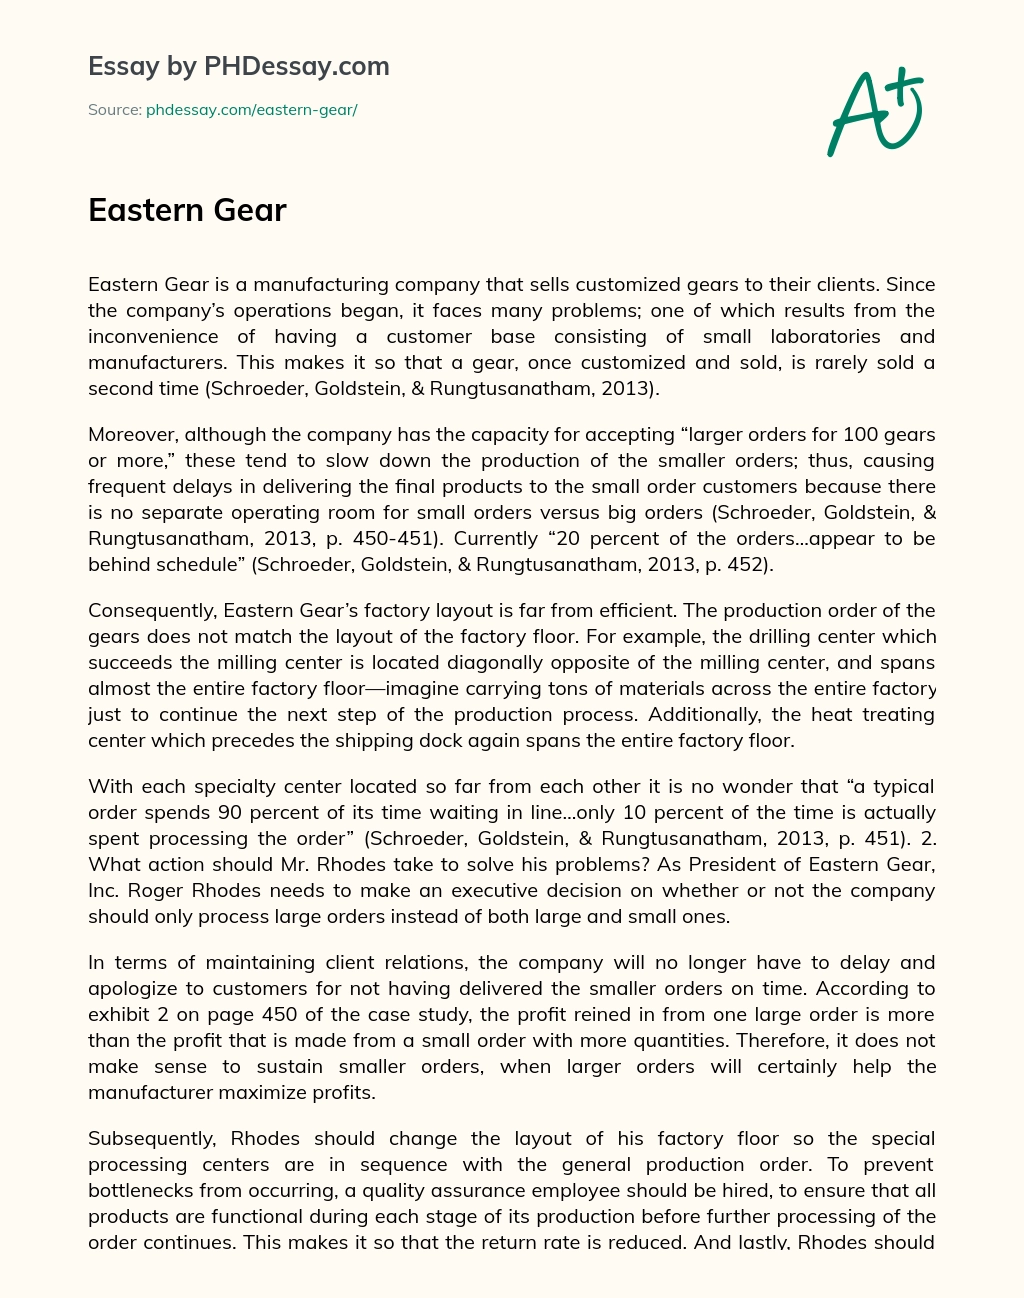 Eastern Gear essay